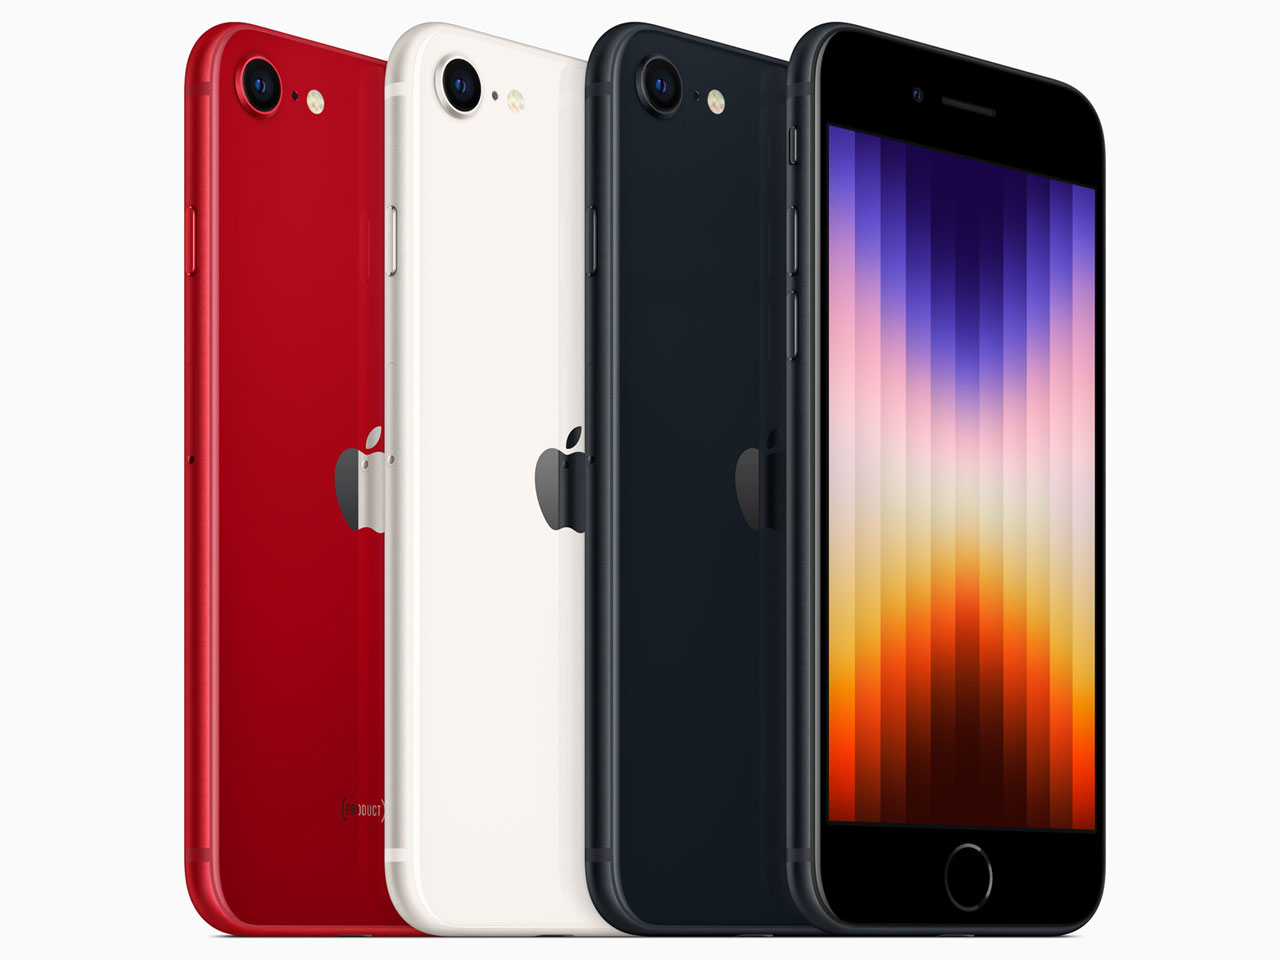 スマートフォン/携帯電話 スマートフォン本体 新品未使用/未開封】 iPhone SE 第3世代 64GB RED | www.myglobaltax.com